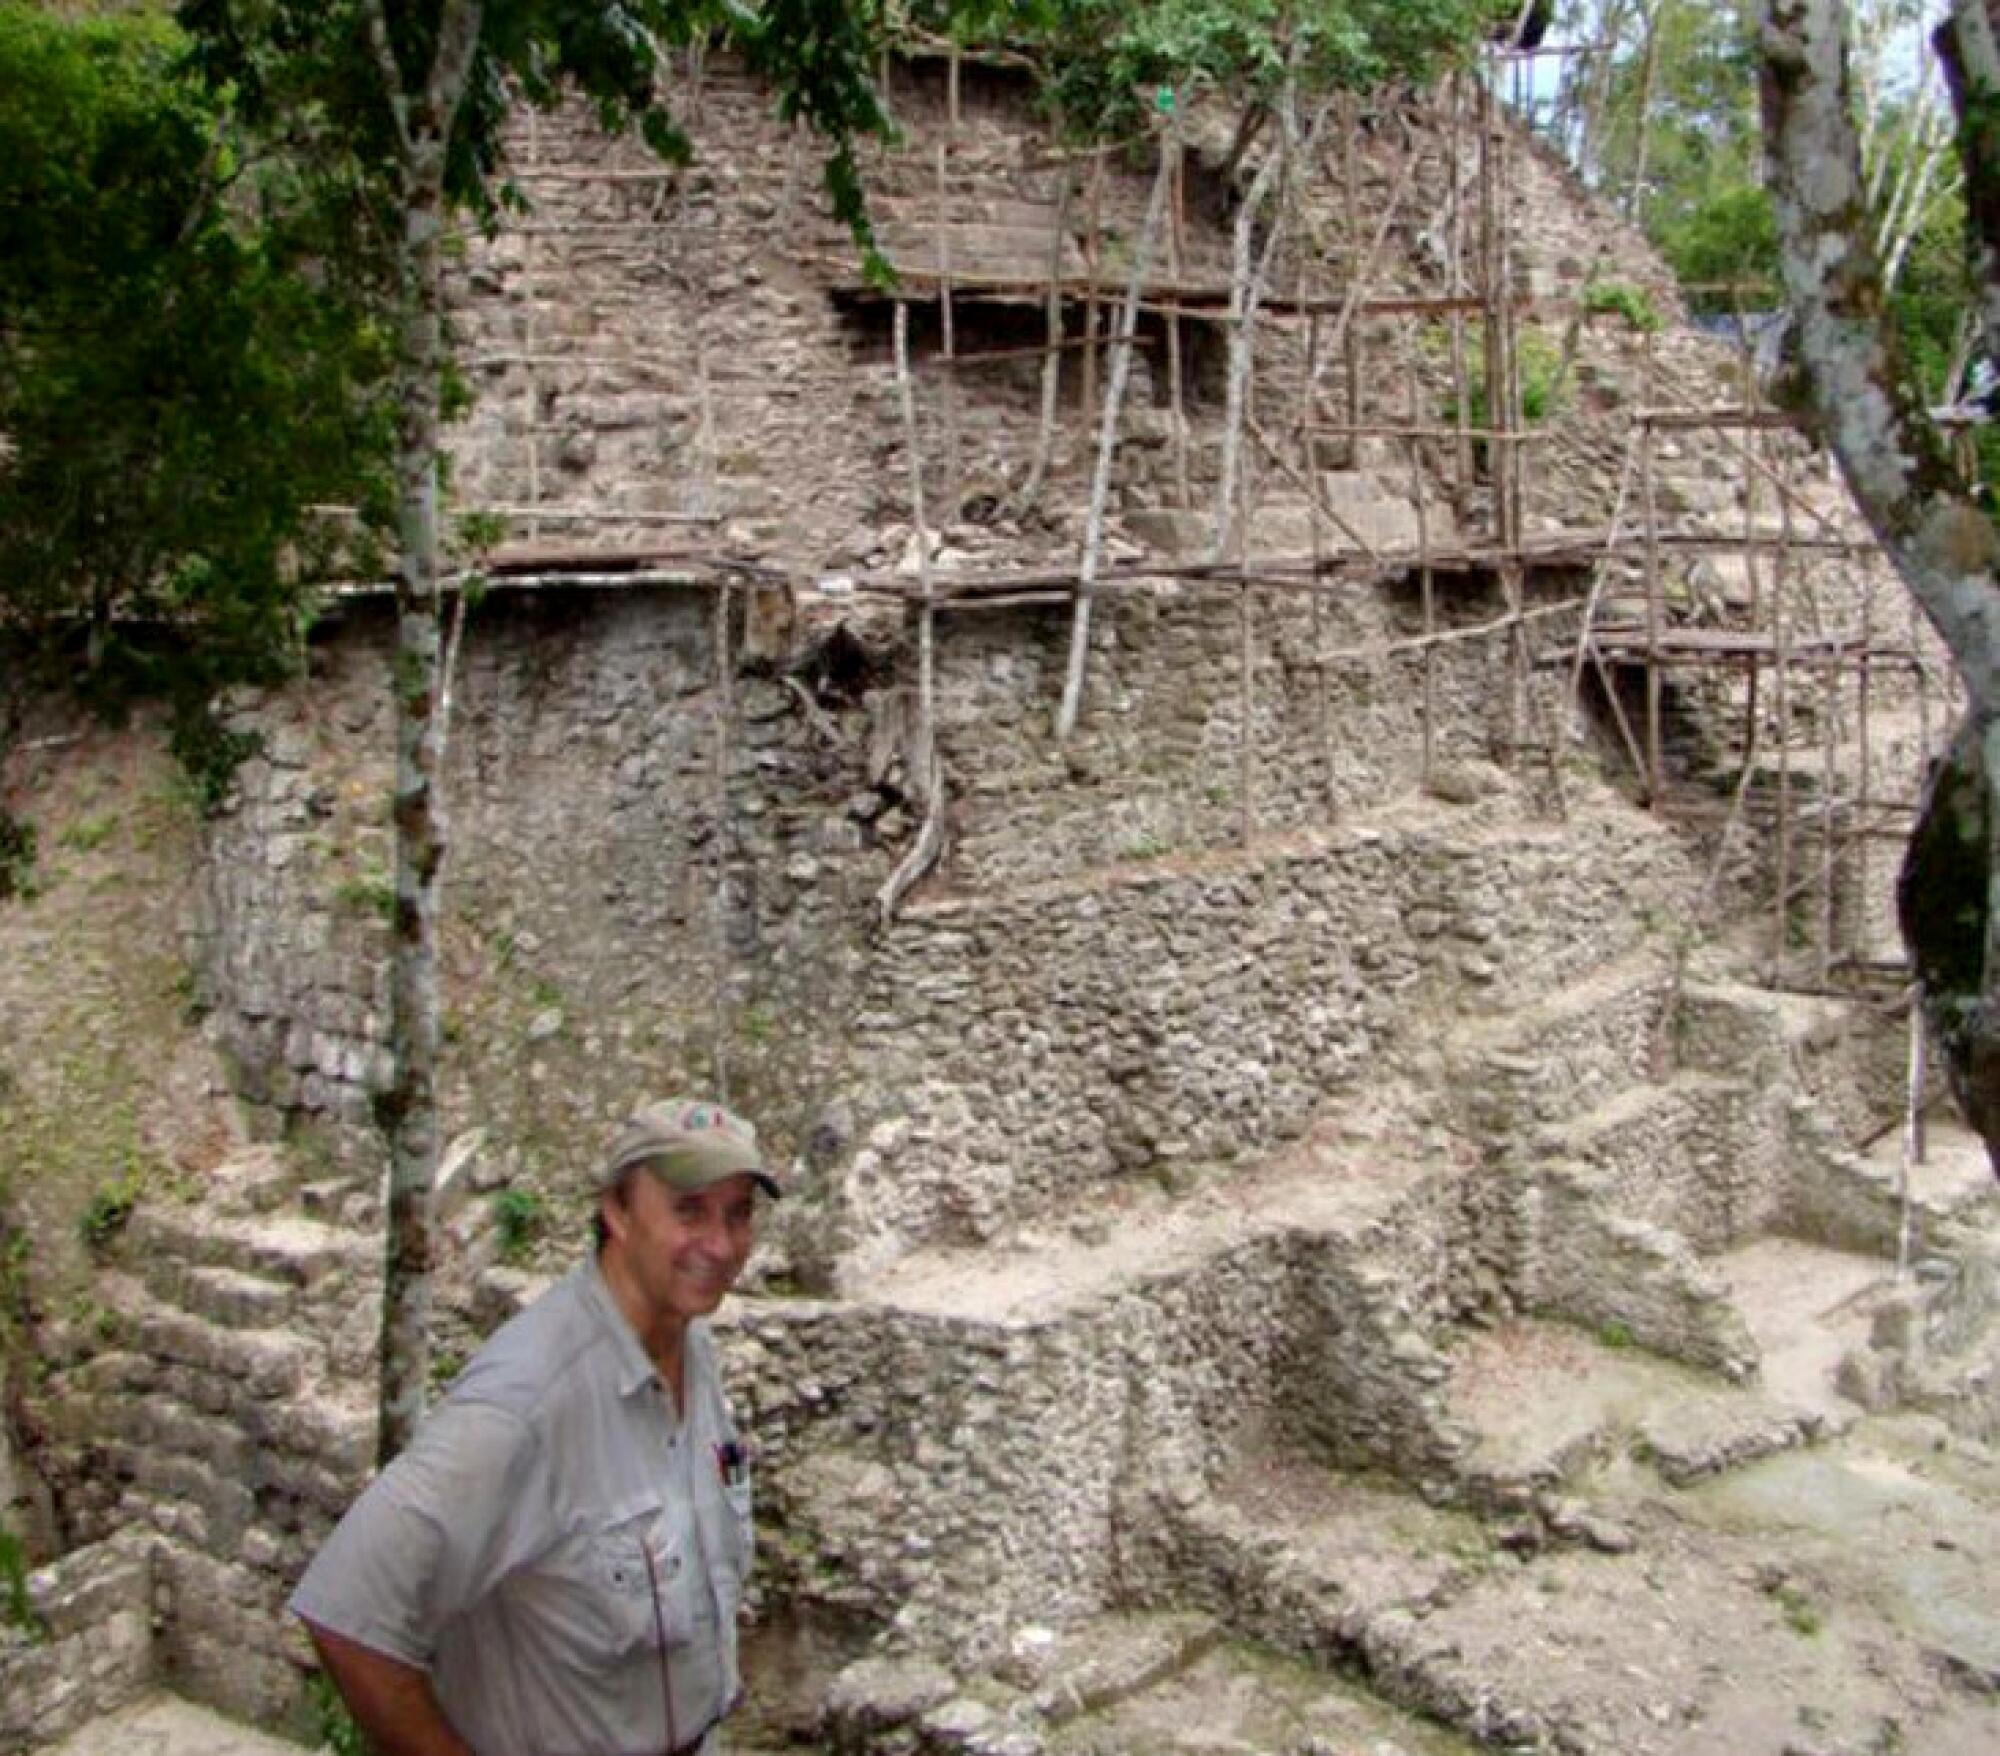 Richard Hansen next to an excavation site in 2009